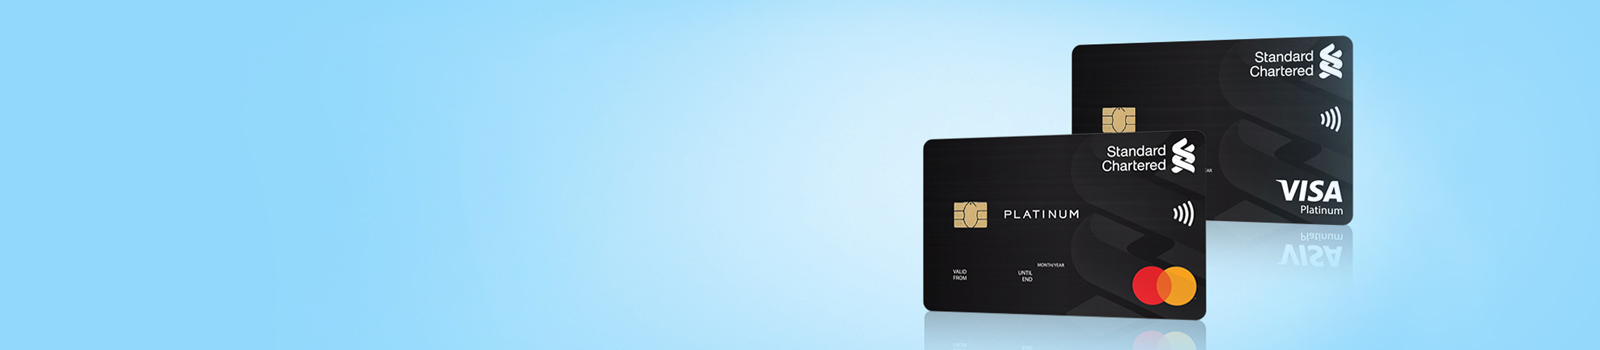 Platinum Visa/MasterCard Credit Card